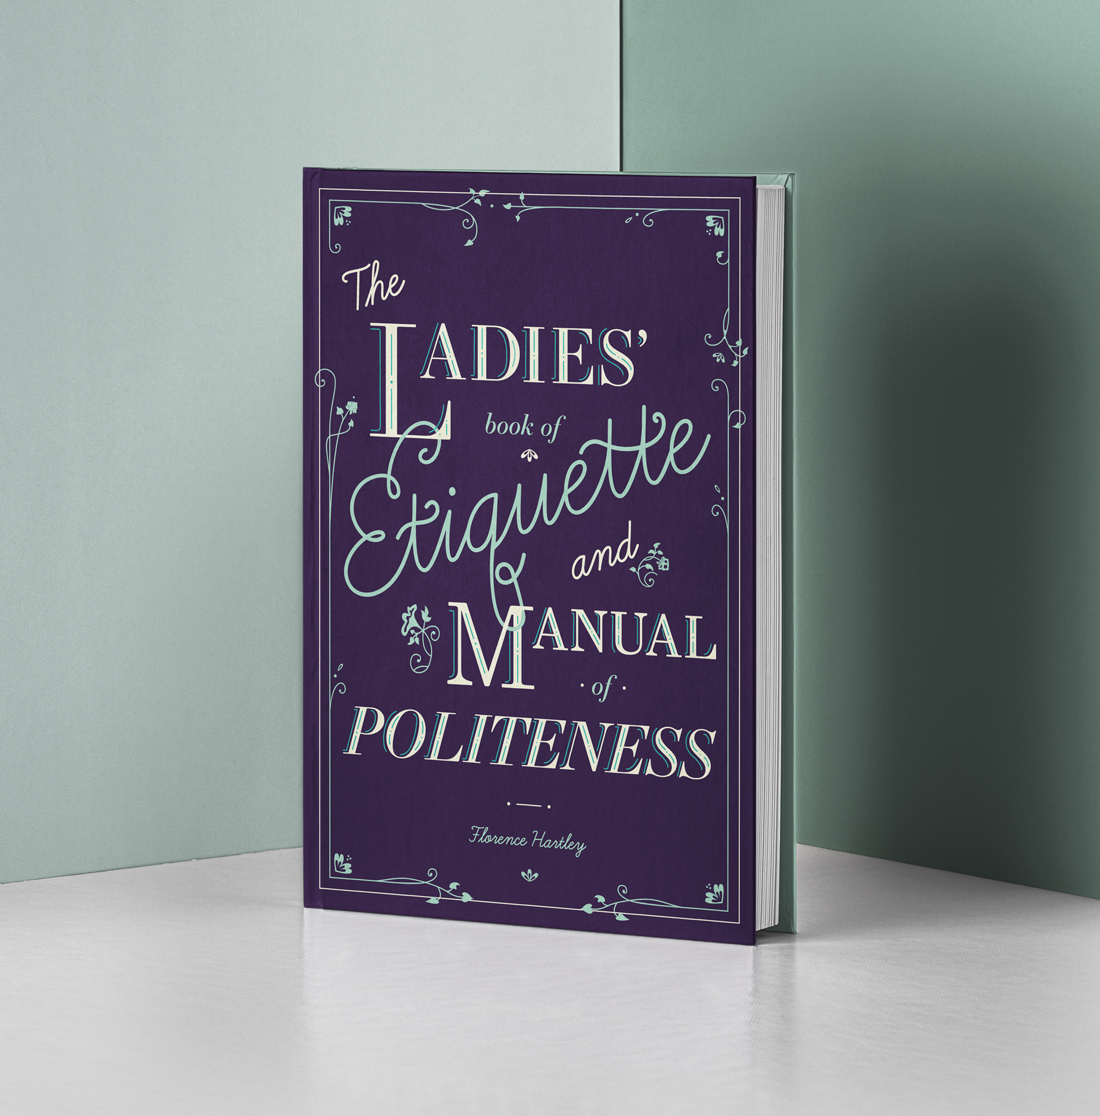 The Ladies’ Book of Etiquette - Image 2